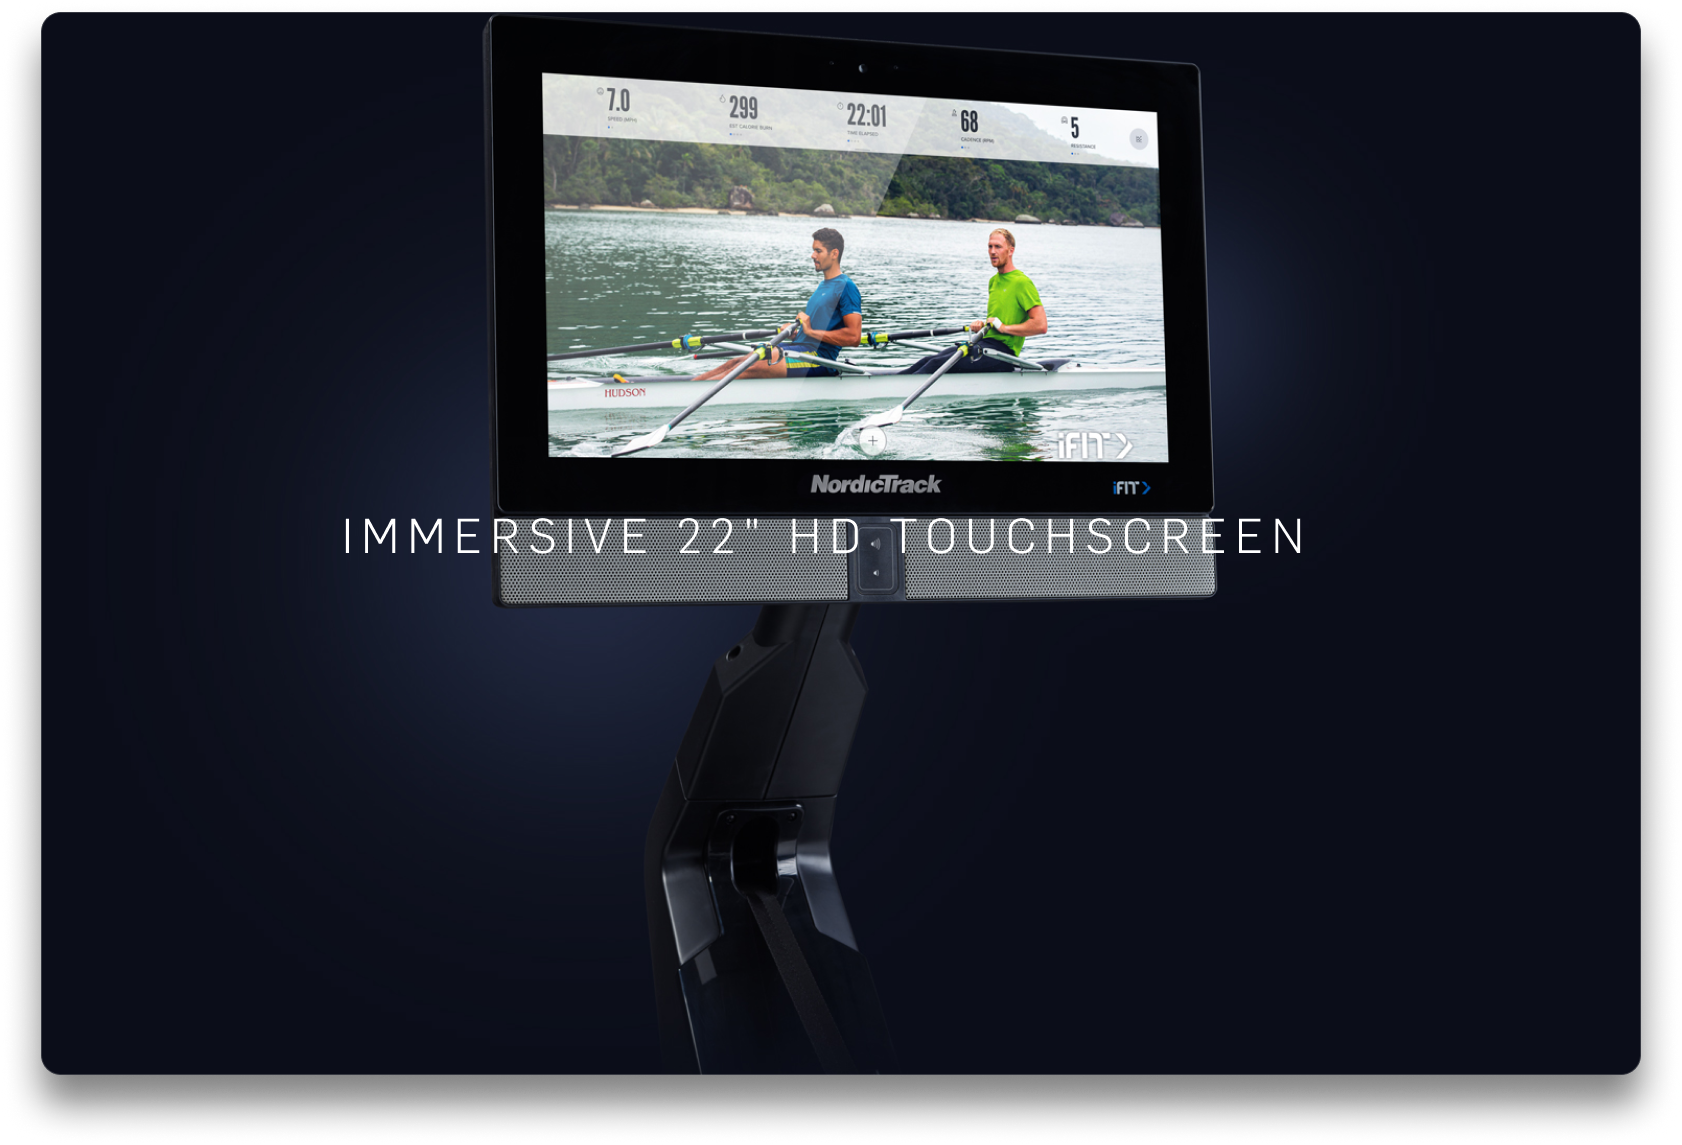 immersive 22" HD touchscreen